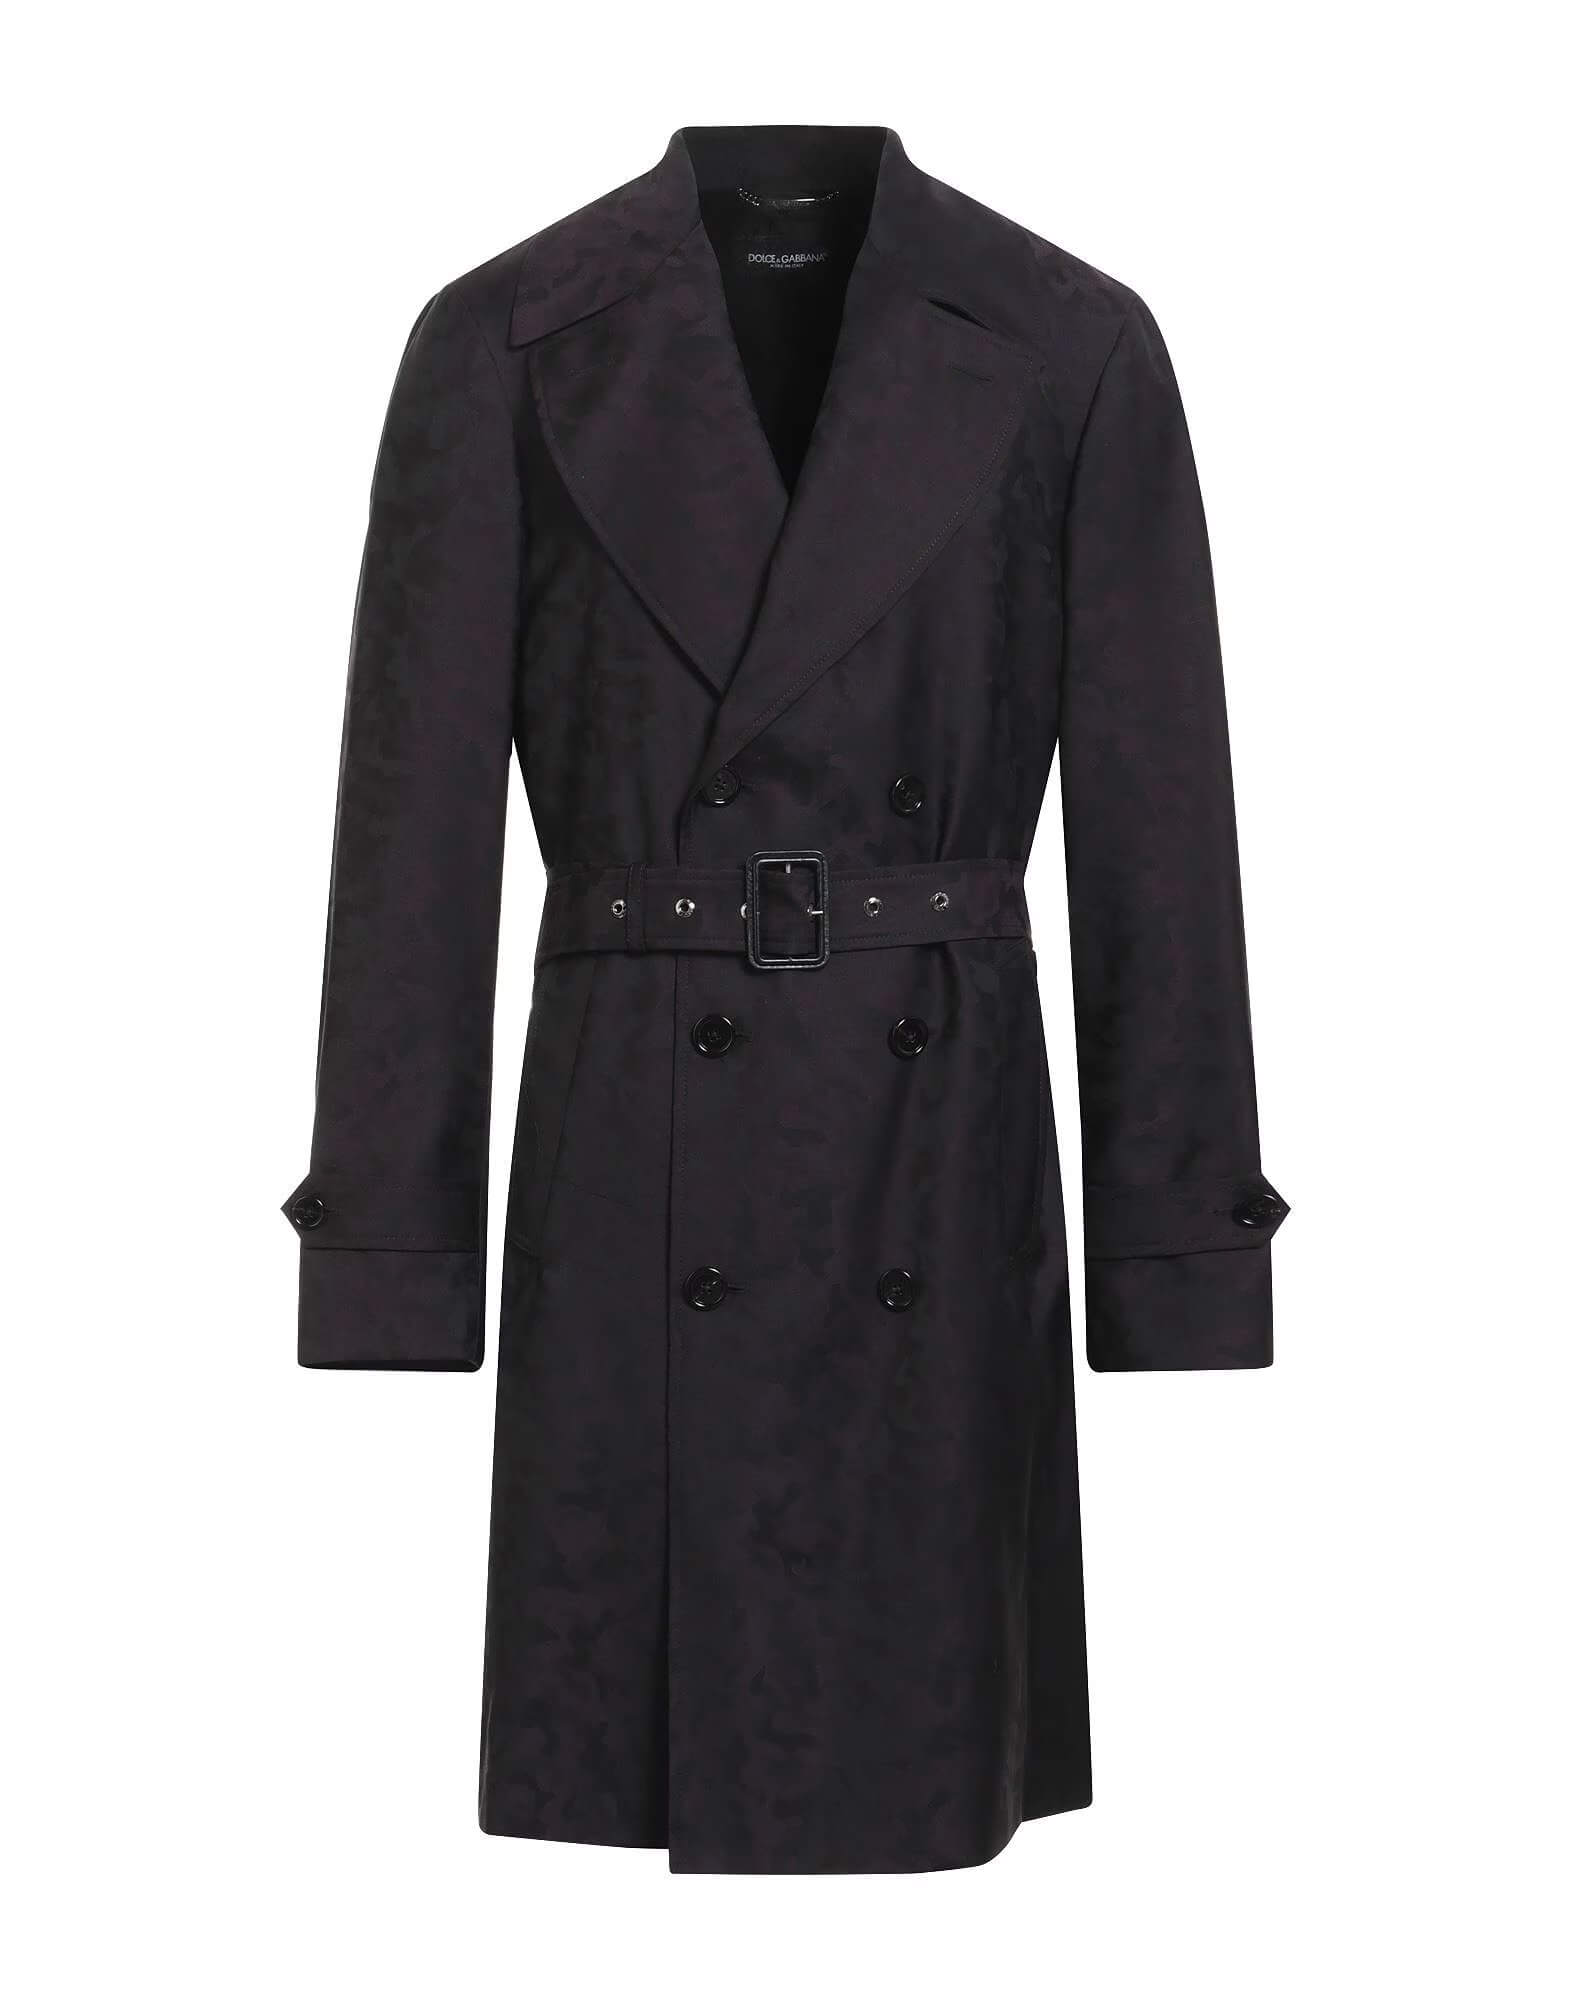 Двубортное пальто с поясом Dolce & Gabbana, темно-фиолетовый женское шерстяное пальто с поясом теплое двубортное пальто средней длины с отложным воротником в корейском стиле осень зима 2021